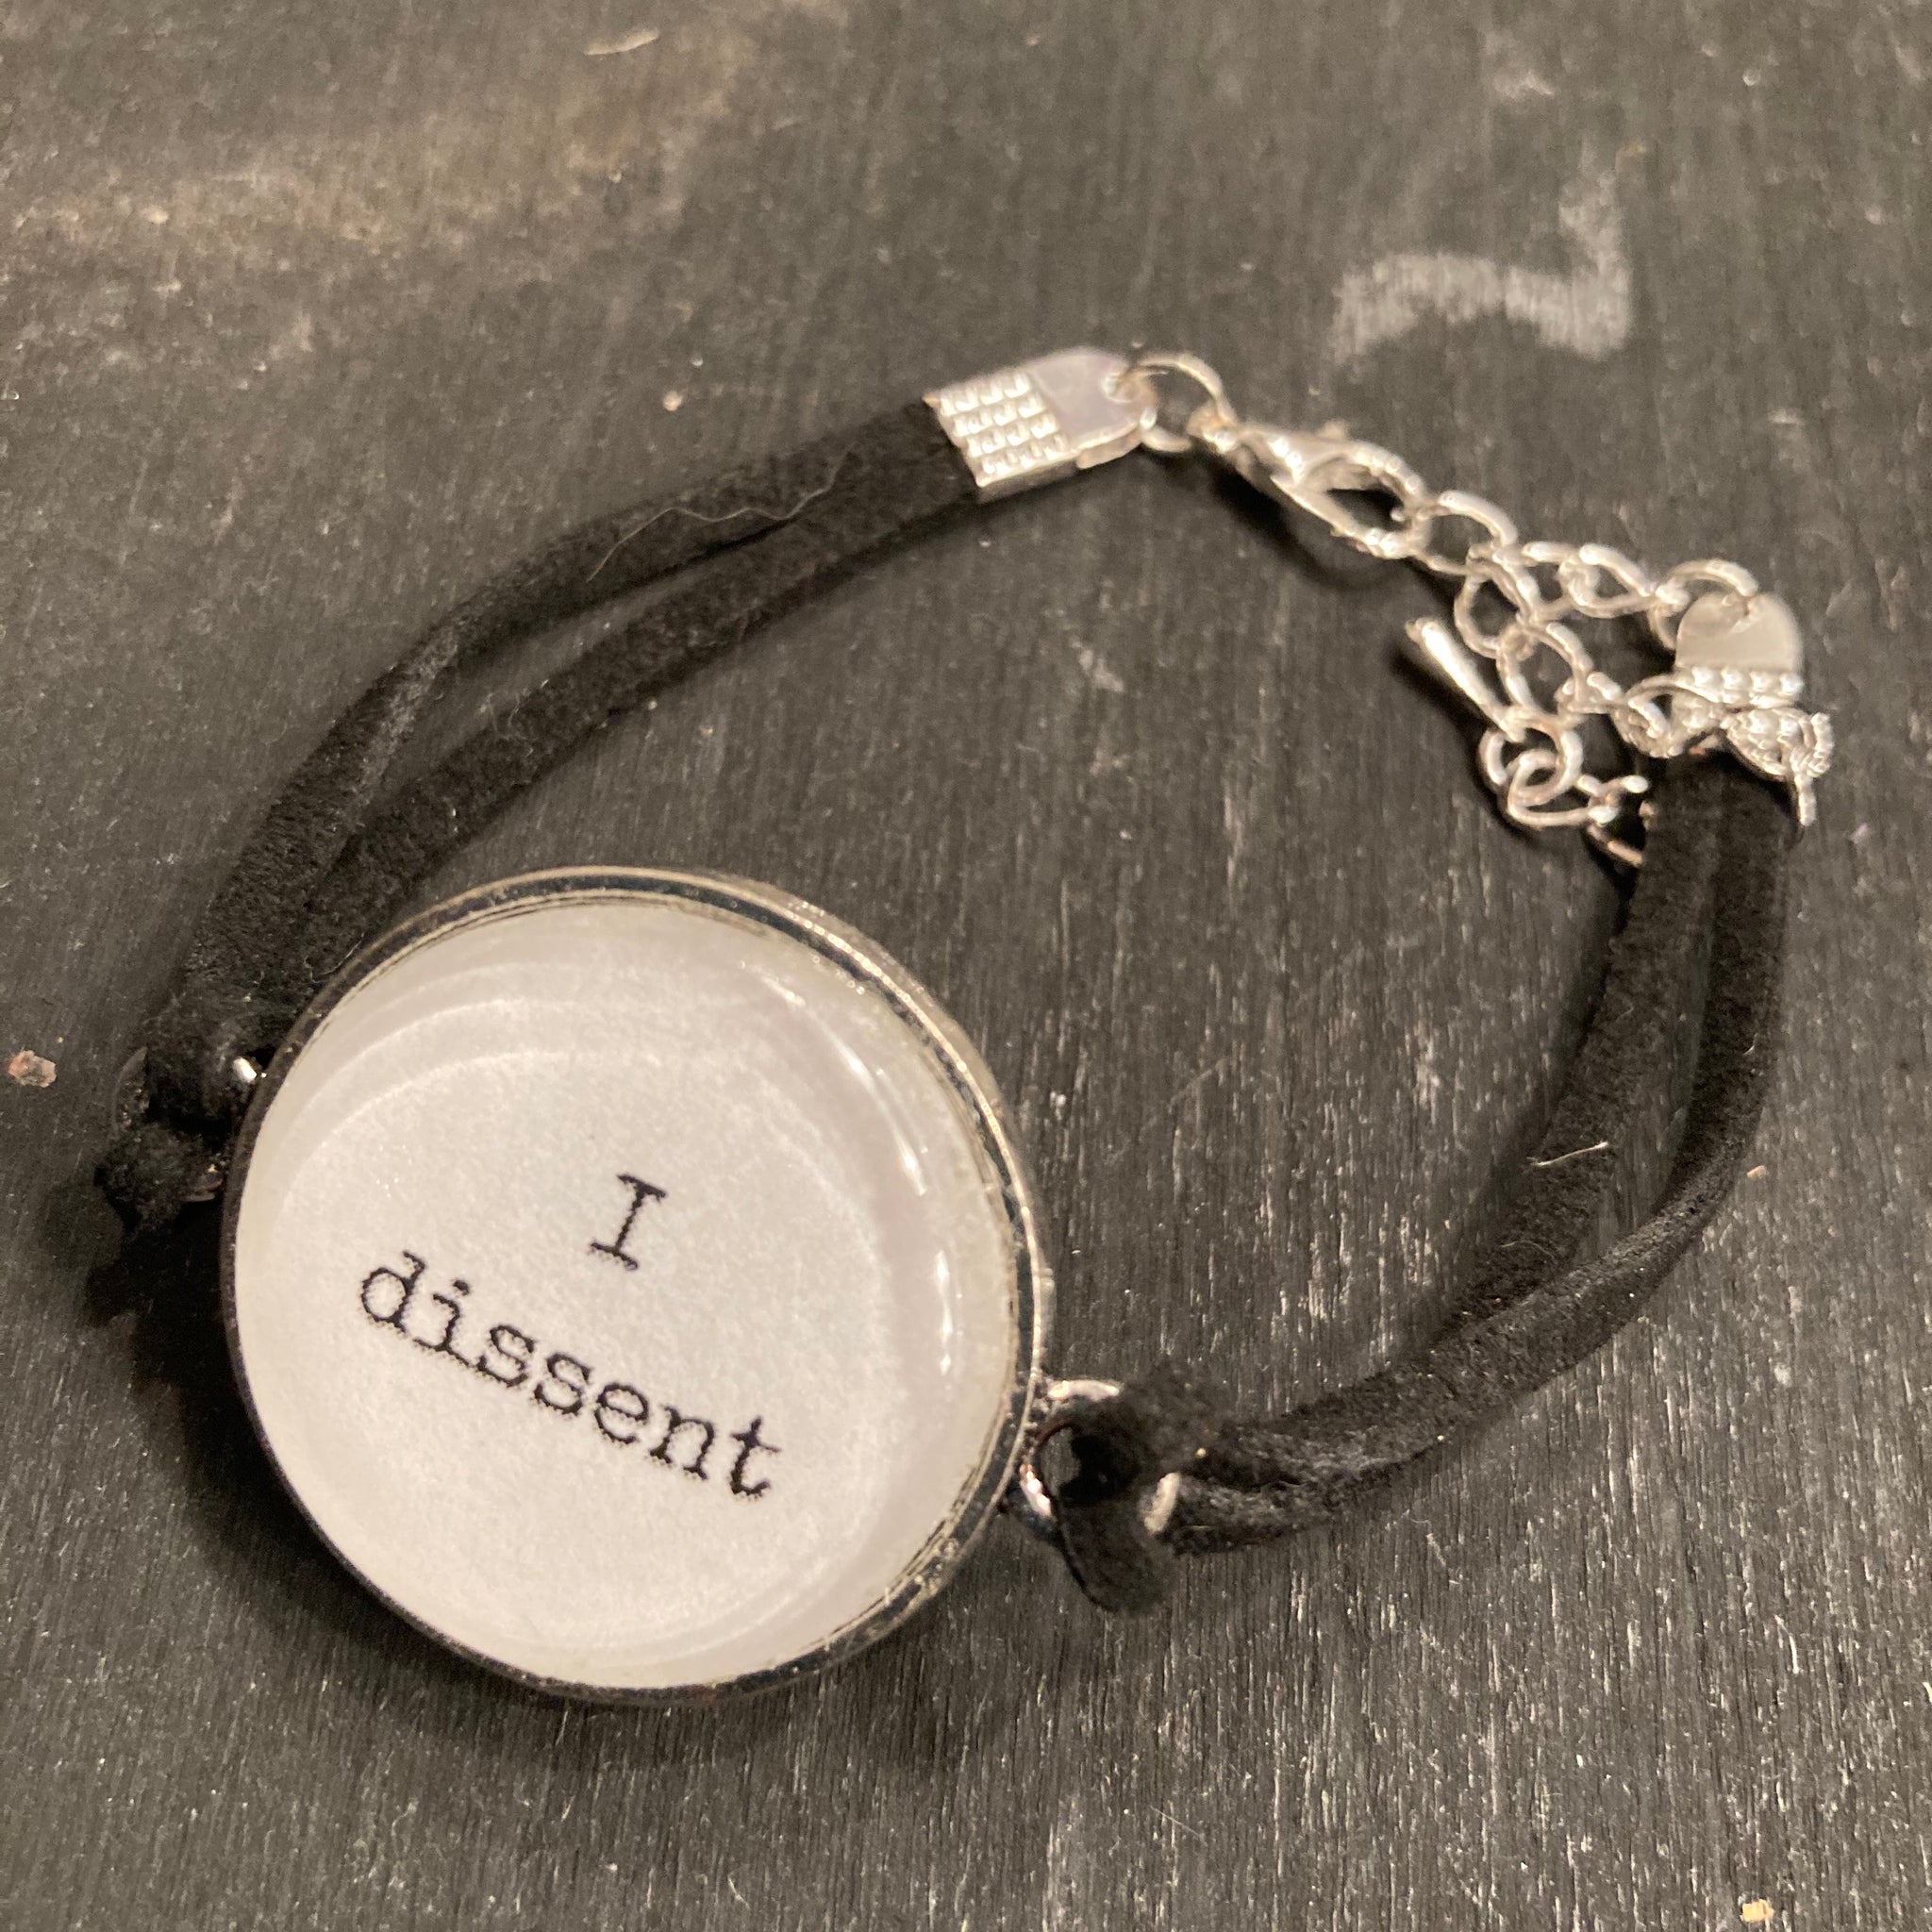 Bracelet - I Dissent